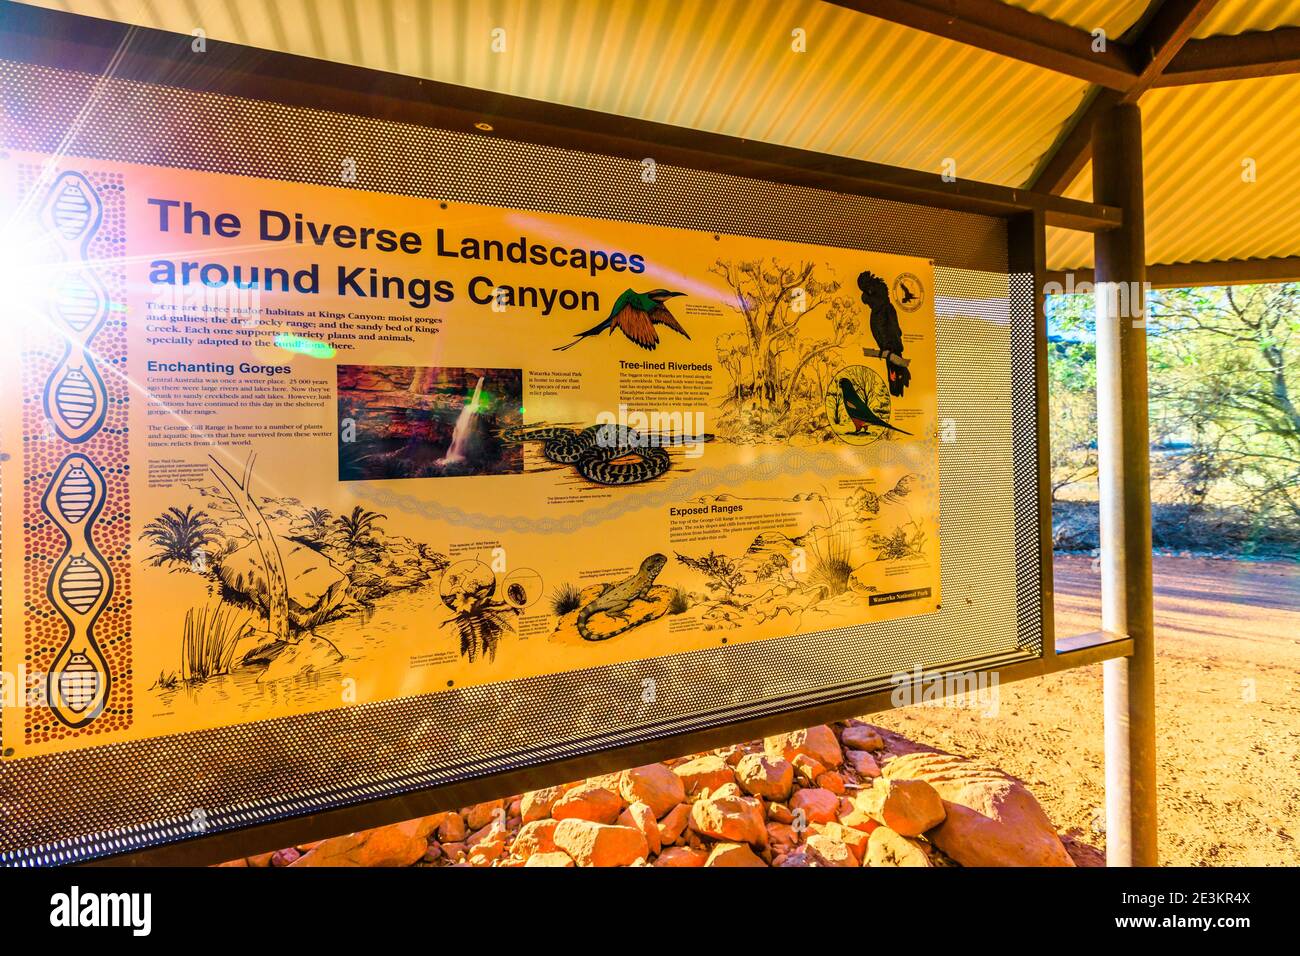 Kings Canyon, territoire du Nord, Australie - 21 août 2019 : panneau d'interprétation sur la faune et la flore du parc national de Watarrka, Outback Red Banque D'Images